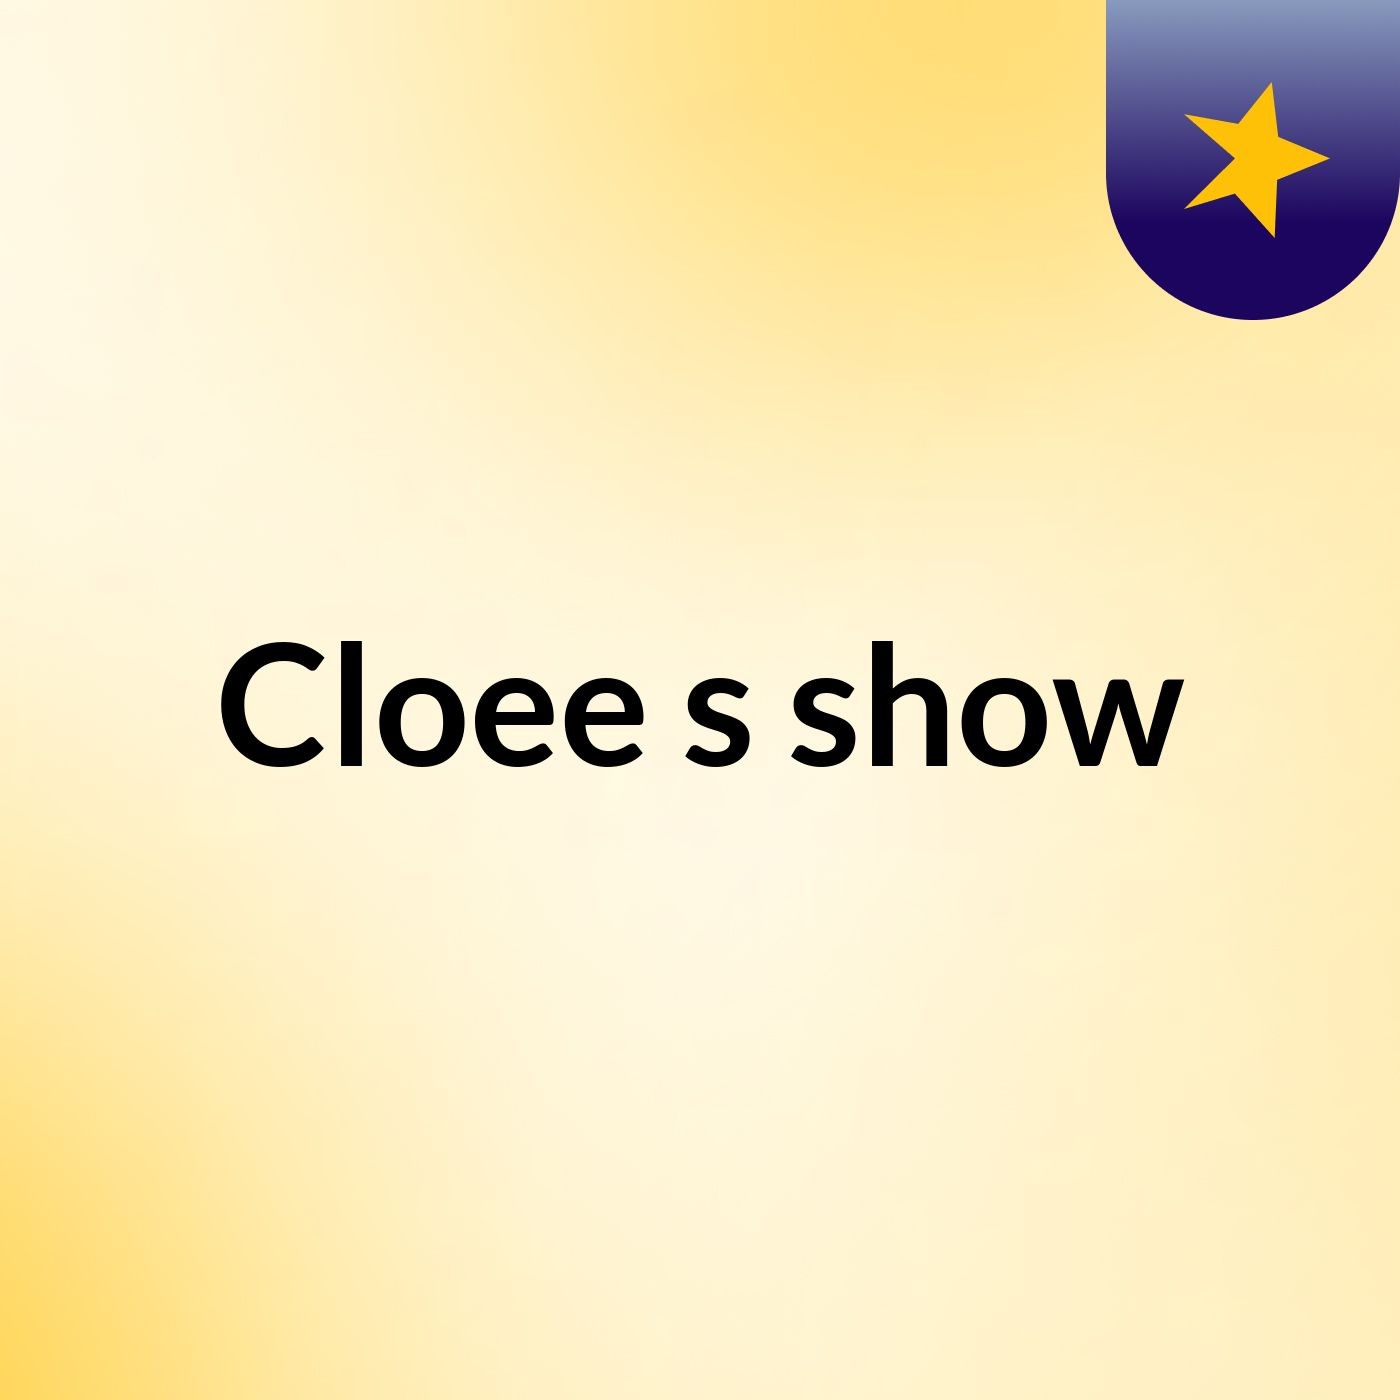 Cloee's show